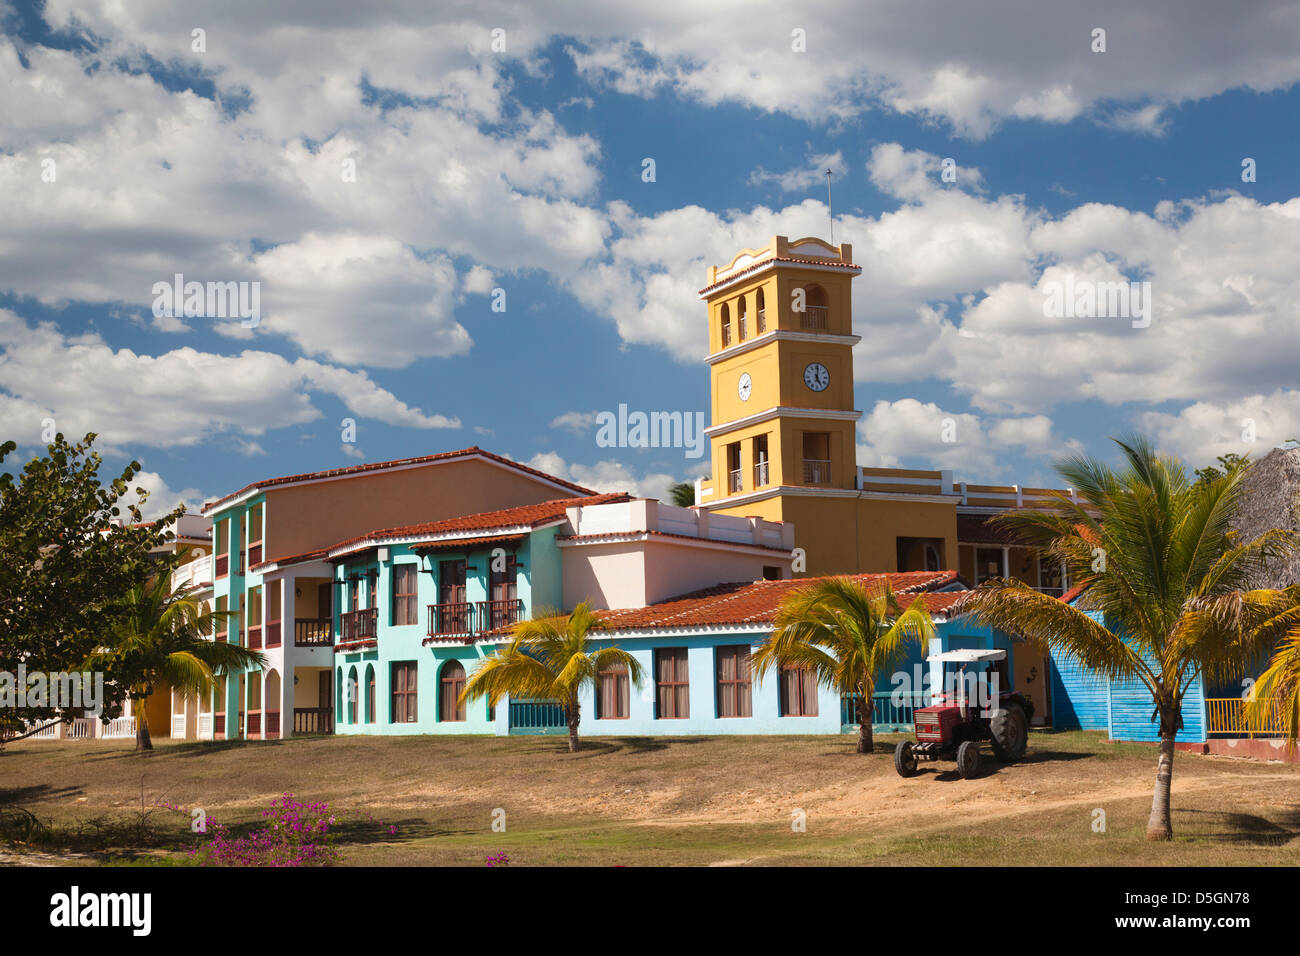 Cuba, Sancti Spiritus Province, Trinidad, Playa Ancon beach, Hotel Brisas Trinidad del Mar Stock Photo